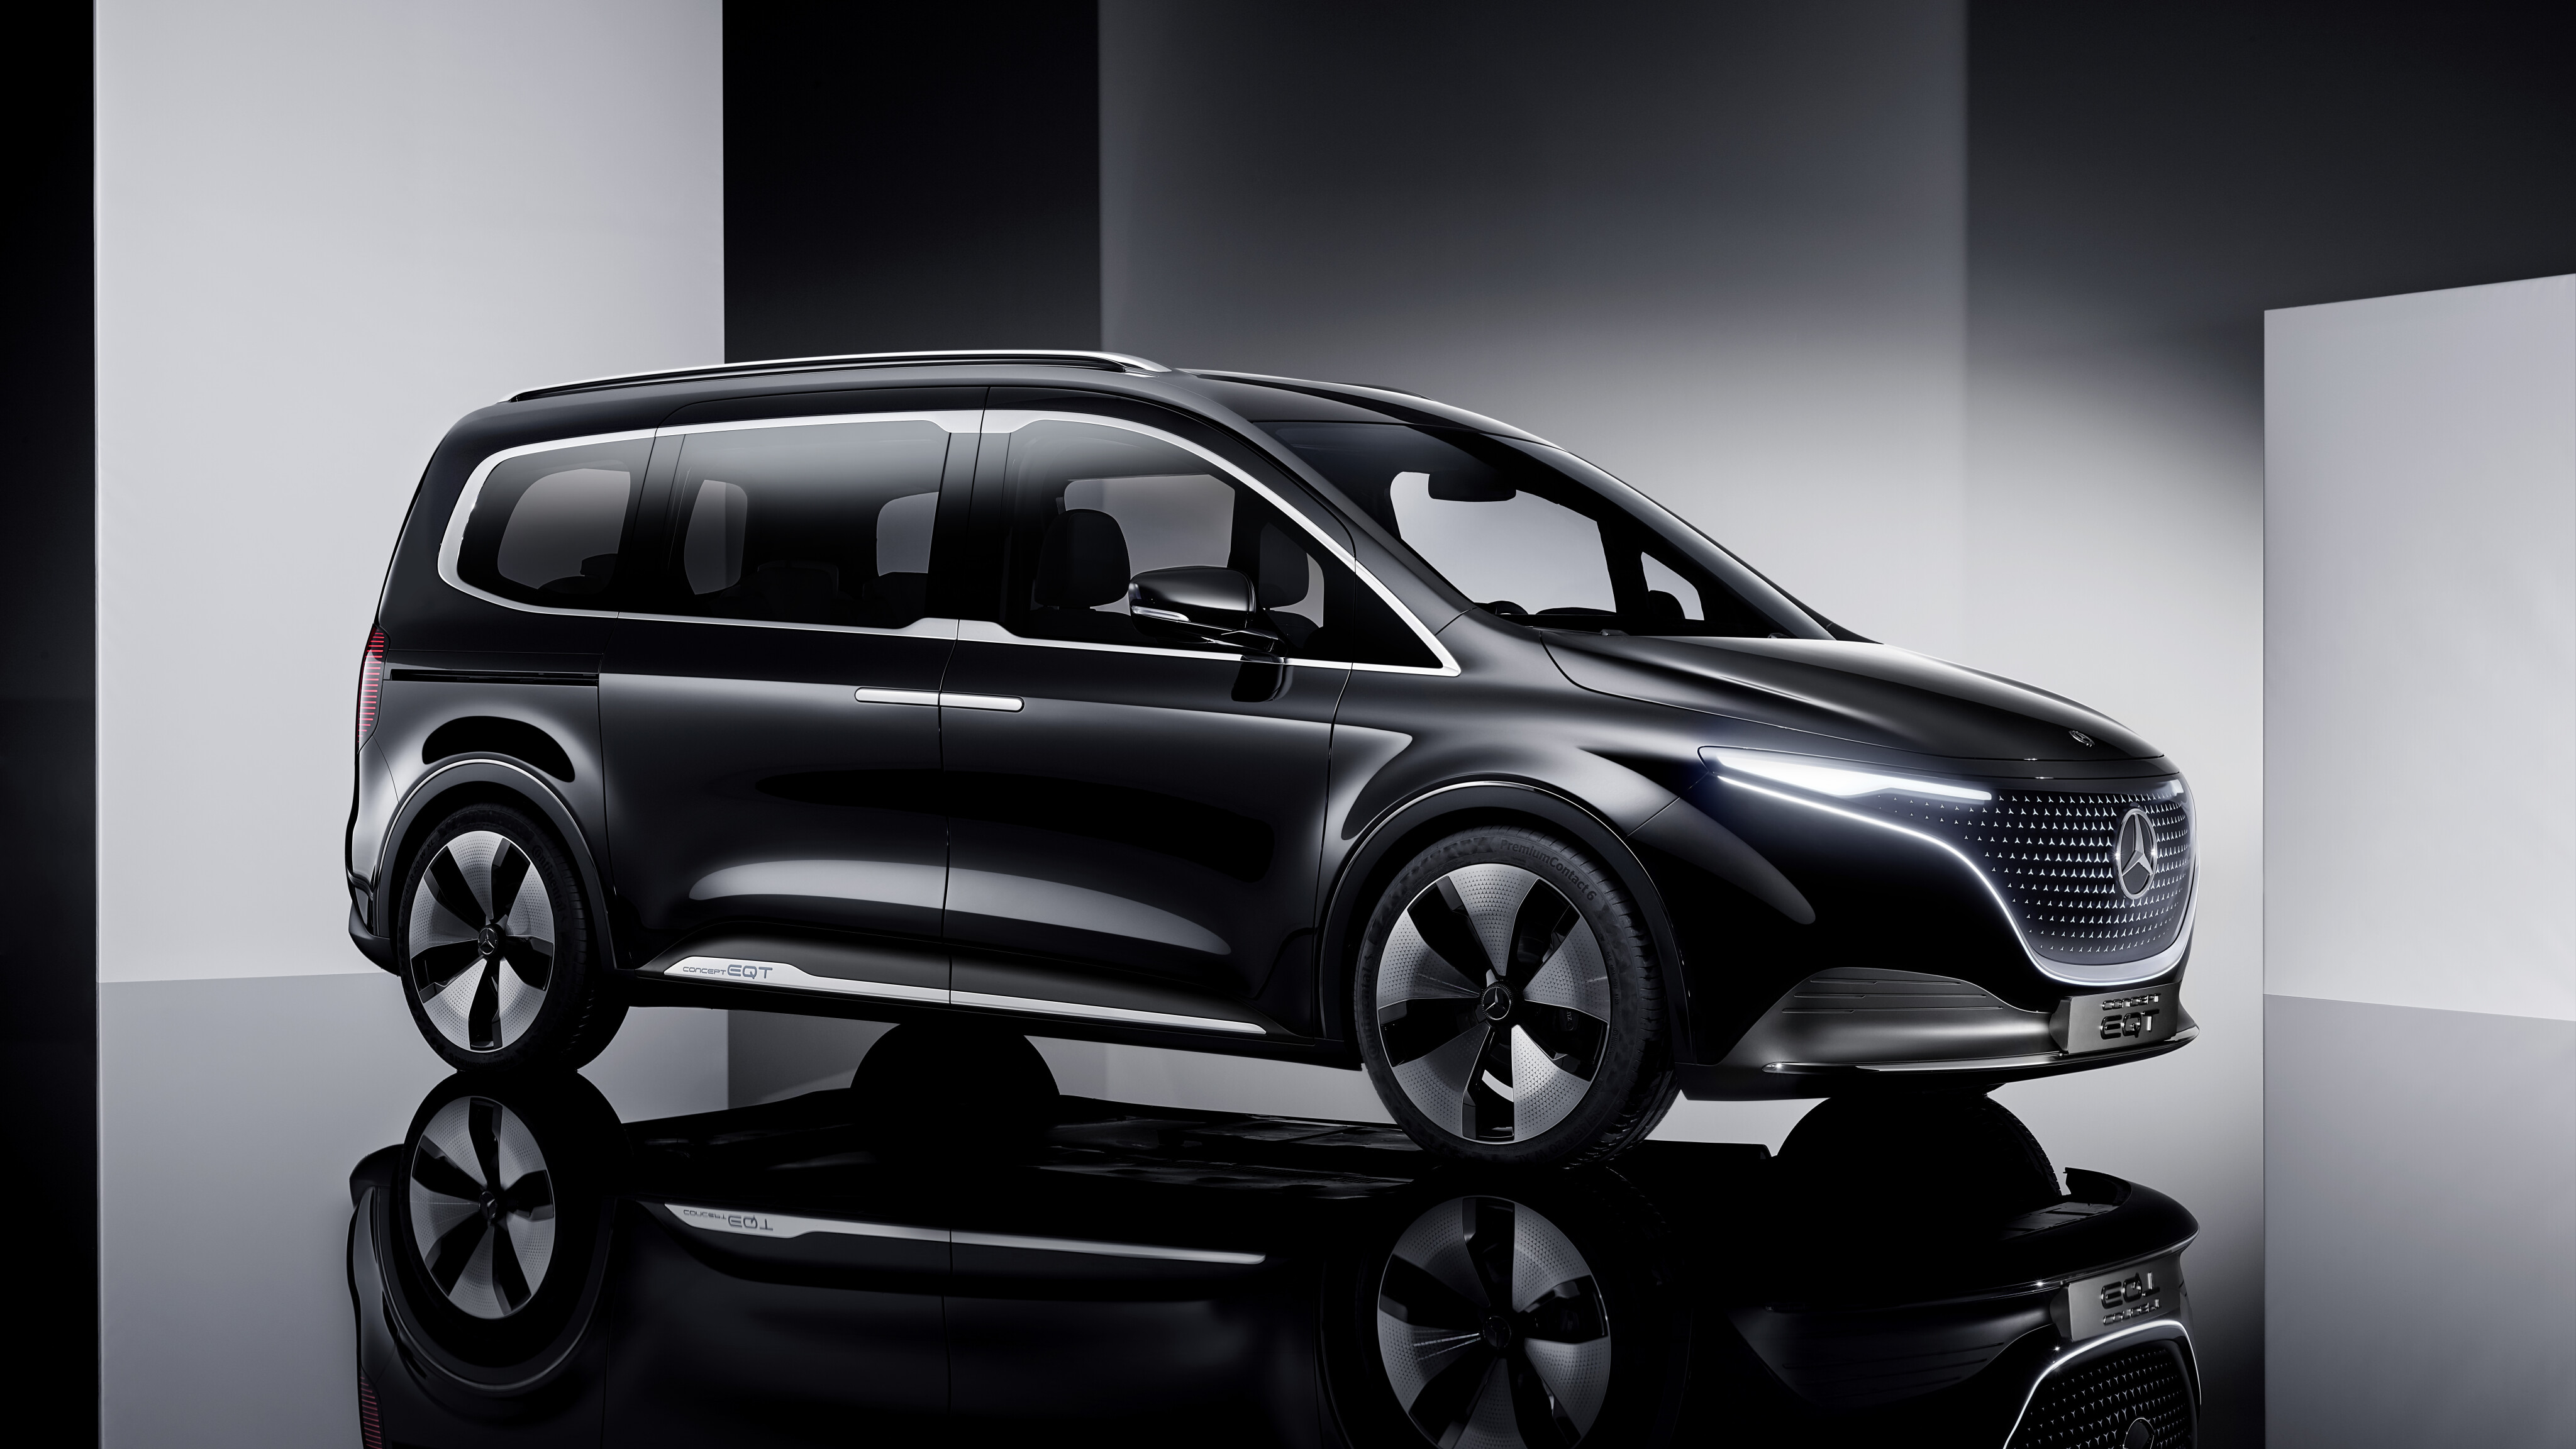 2021 Mercedes-Benz EQT electric compact van concept revealed